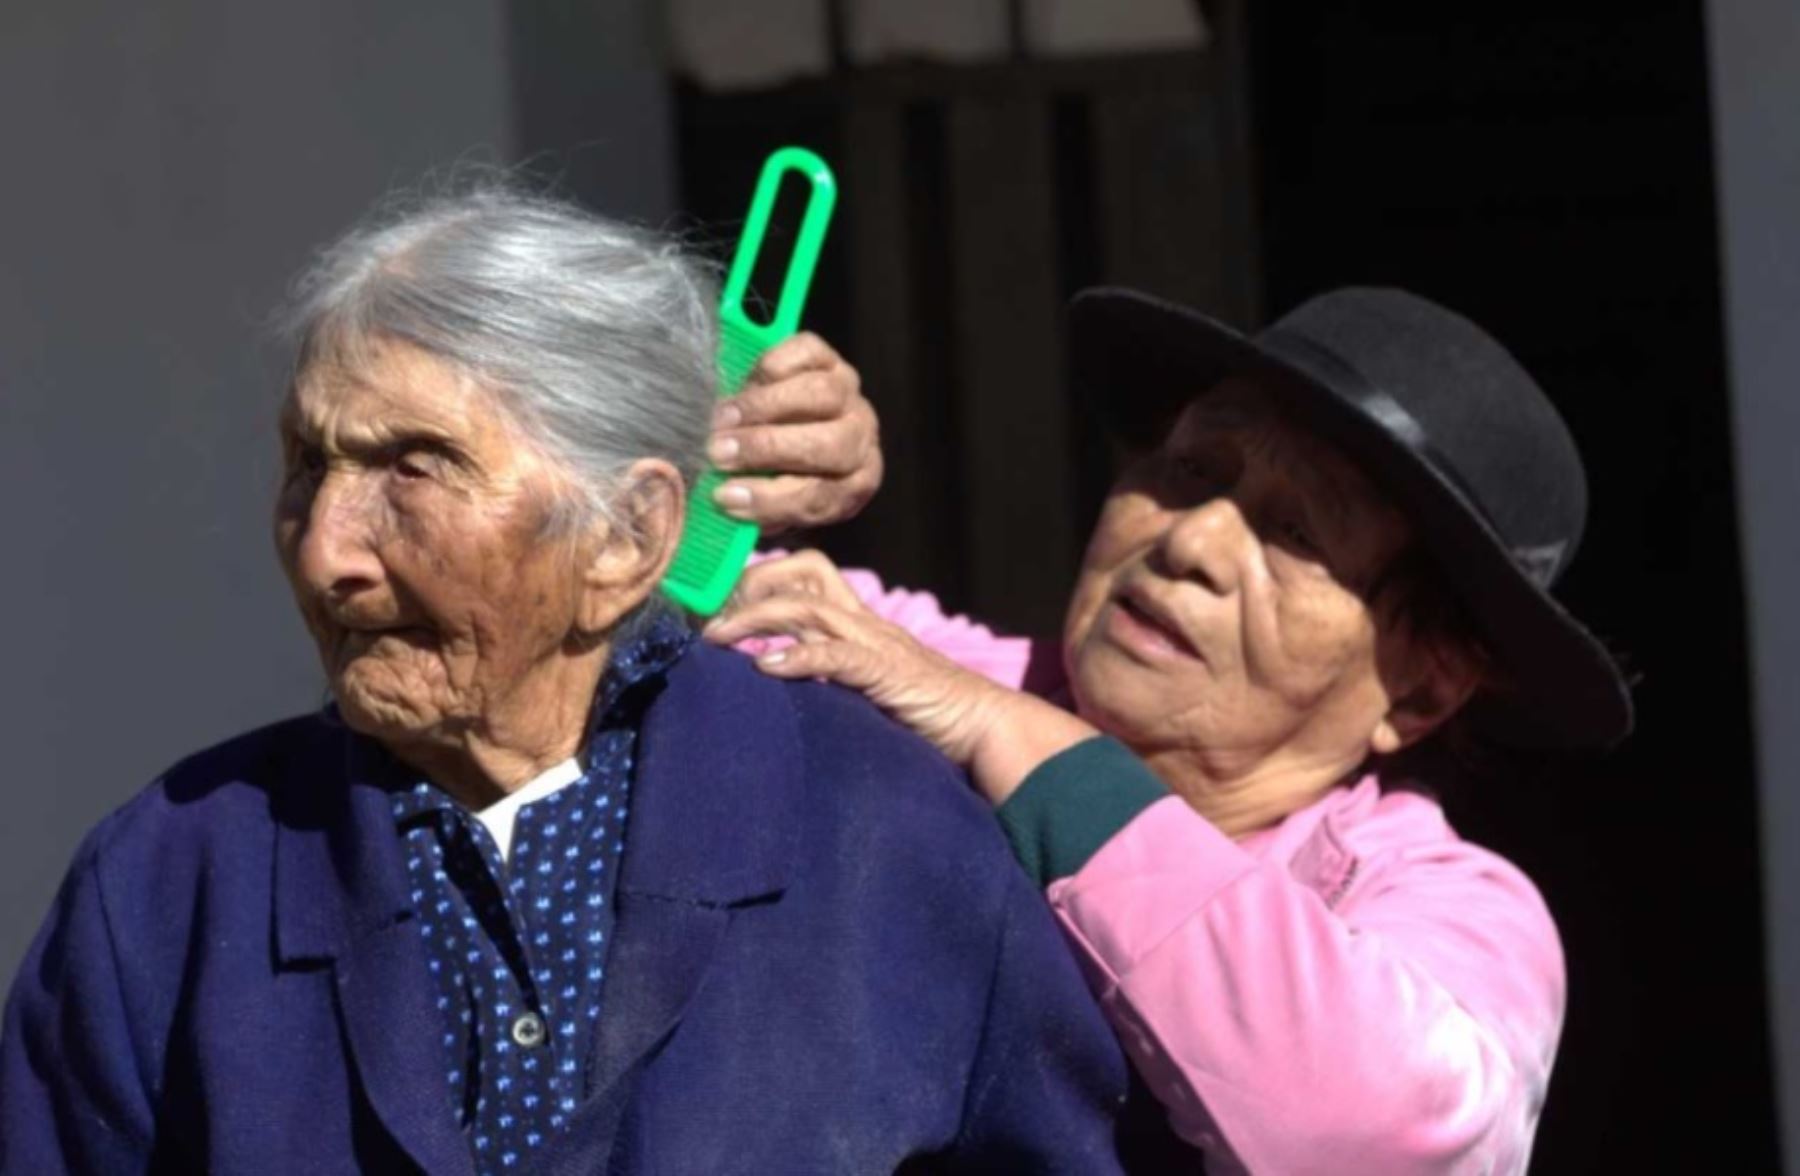 La ayacuchana María Flores Rojas es la usuaria más longeva de Pensión 65. Nació en Condorpampa, caserío del anexo de Ccalani, distrito de Upahuacho, provincia de Parinacochas, donde ha vivido sus 116 años.